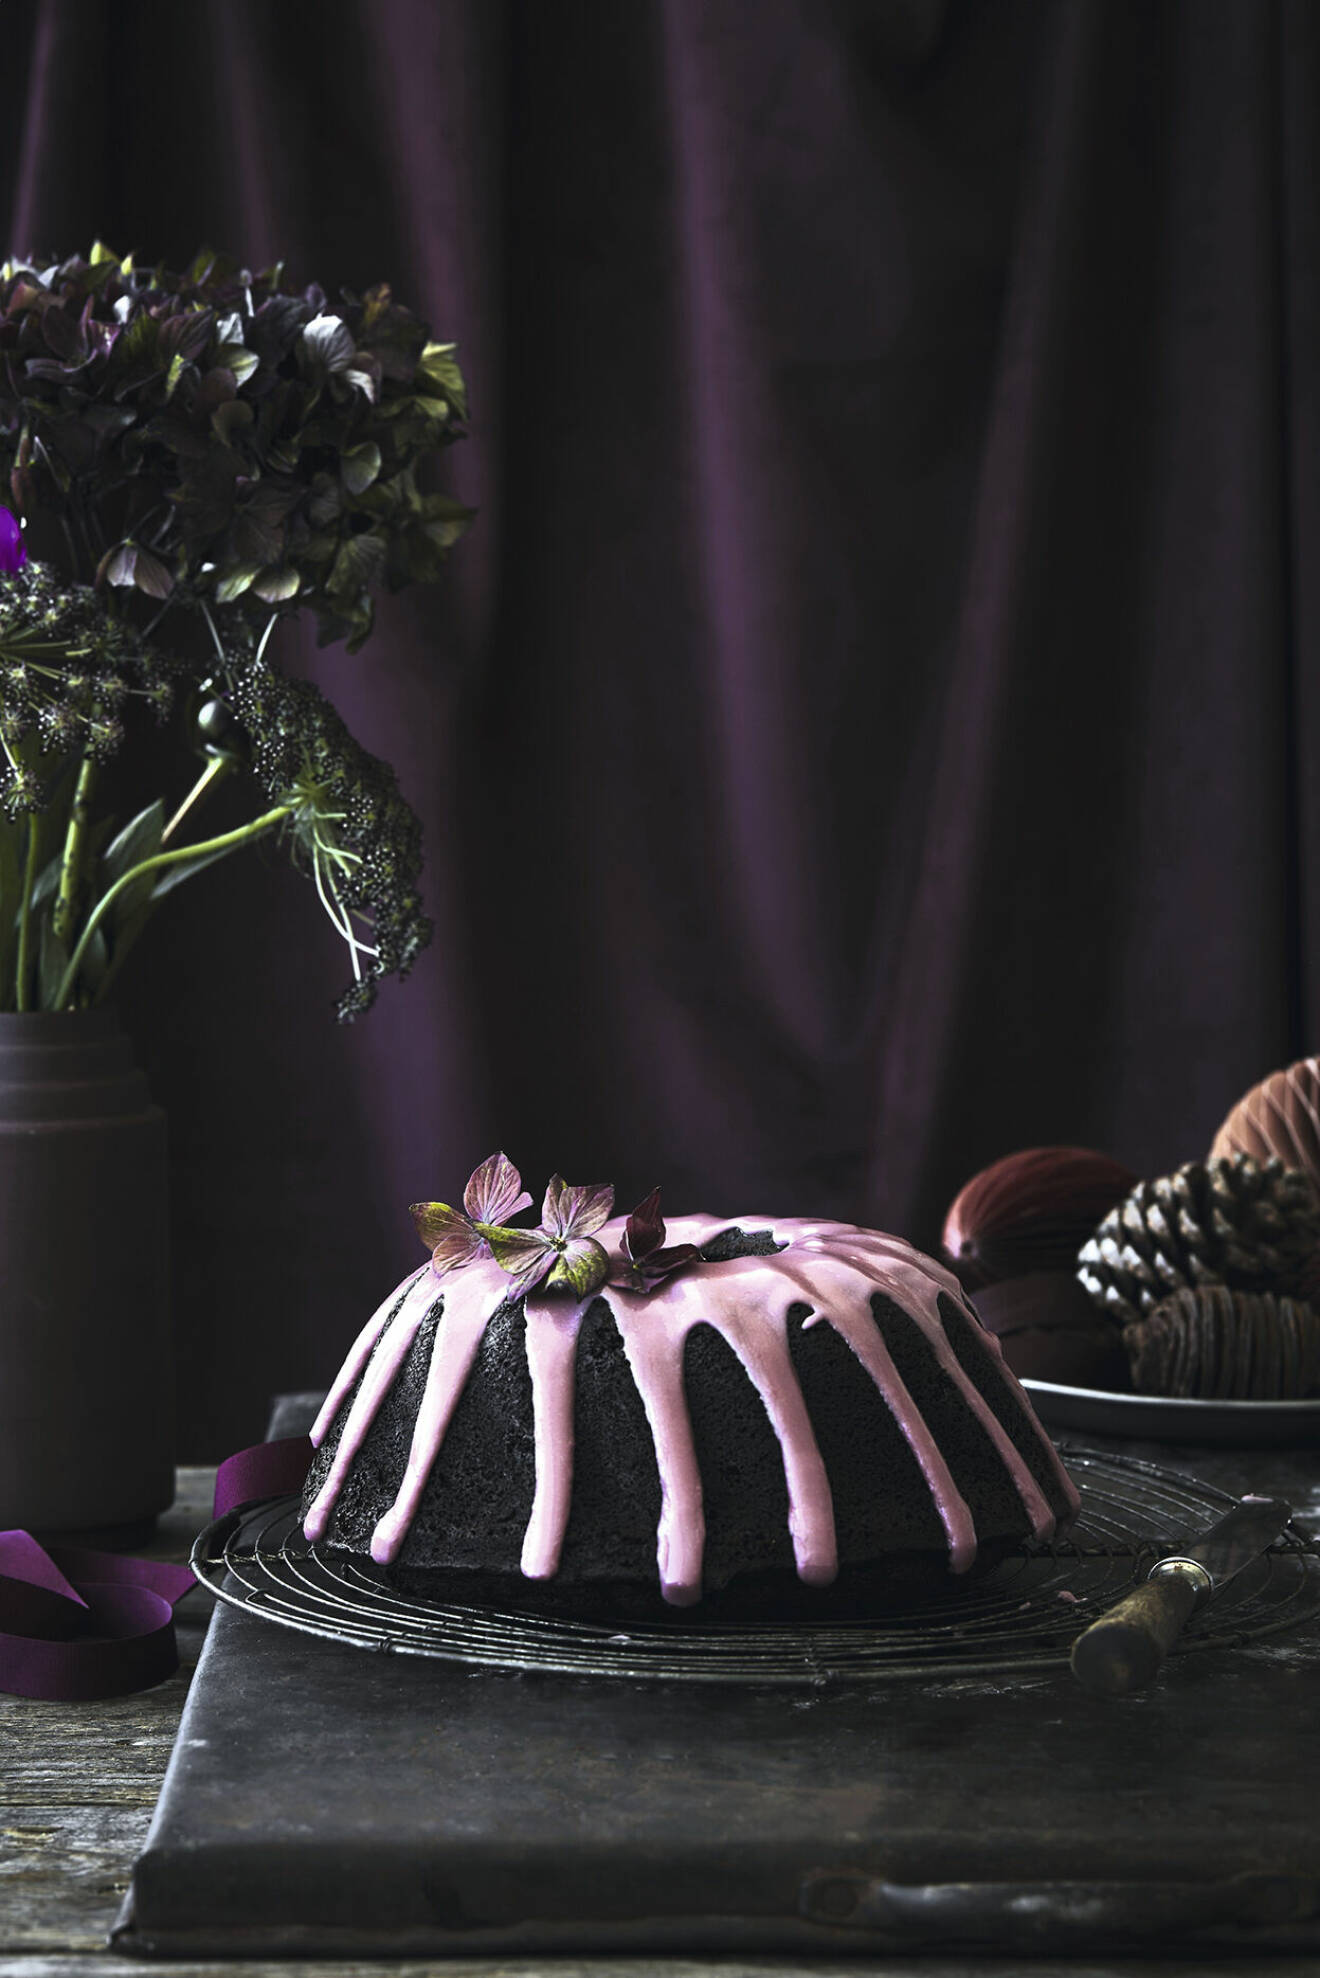 En enkel chokladkaka blir genast festfin med rosa glasyr och färska blommor.